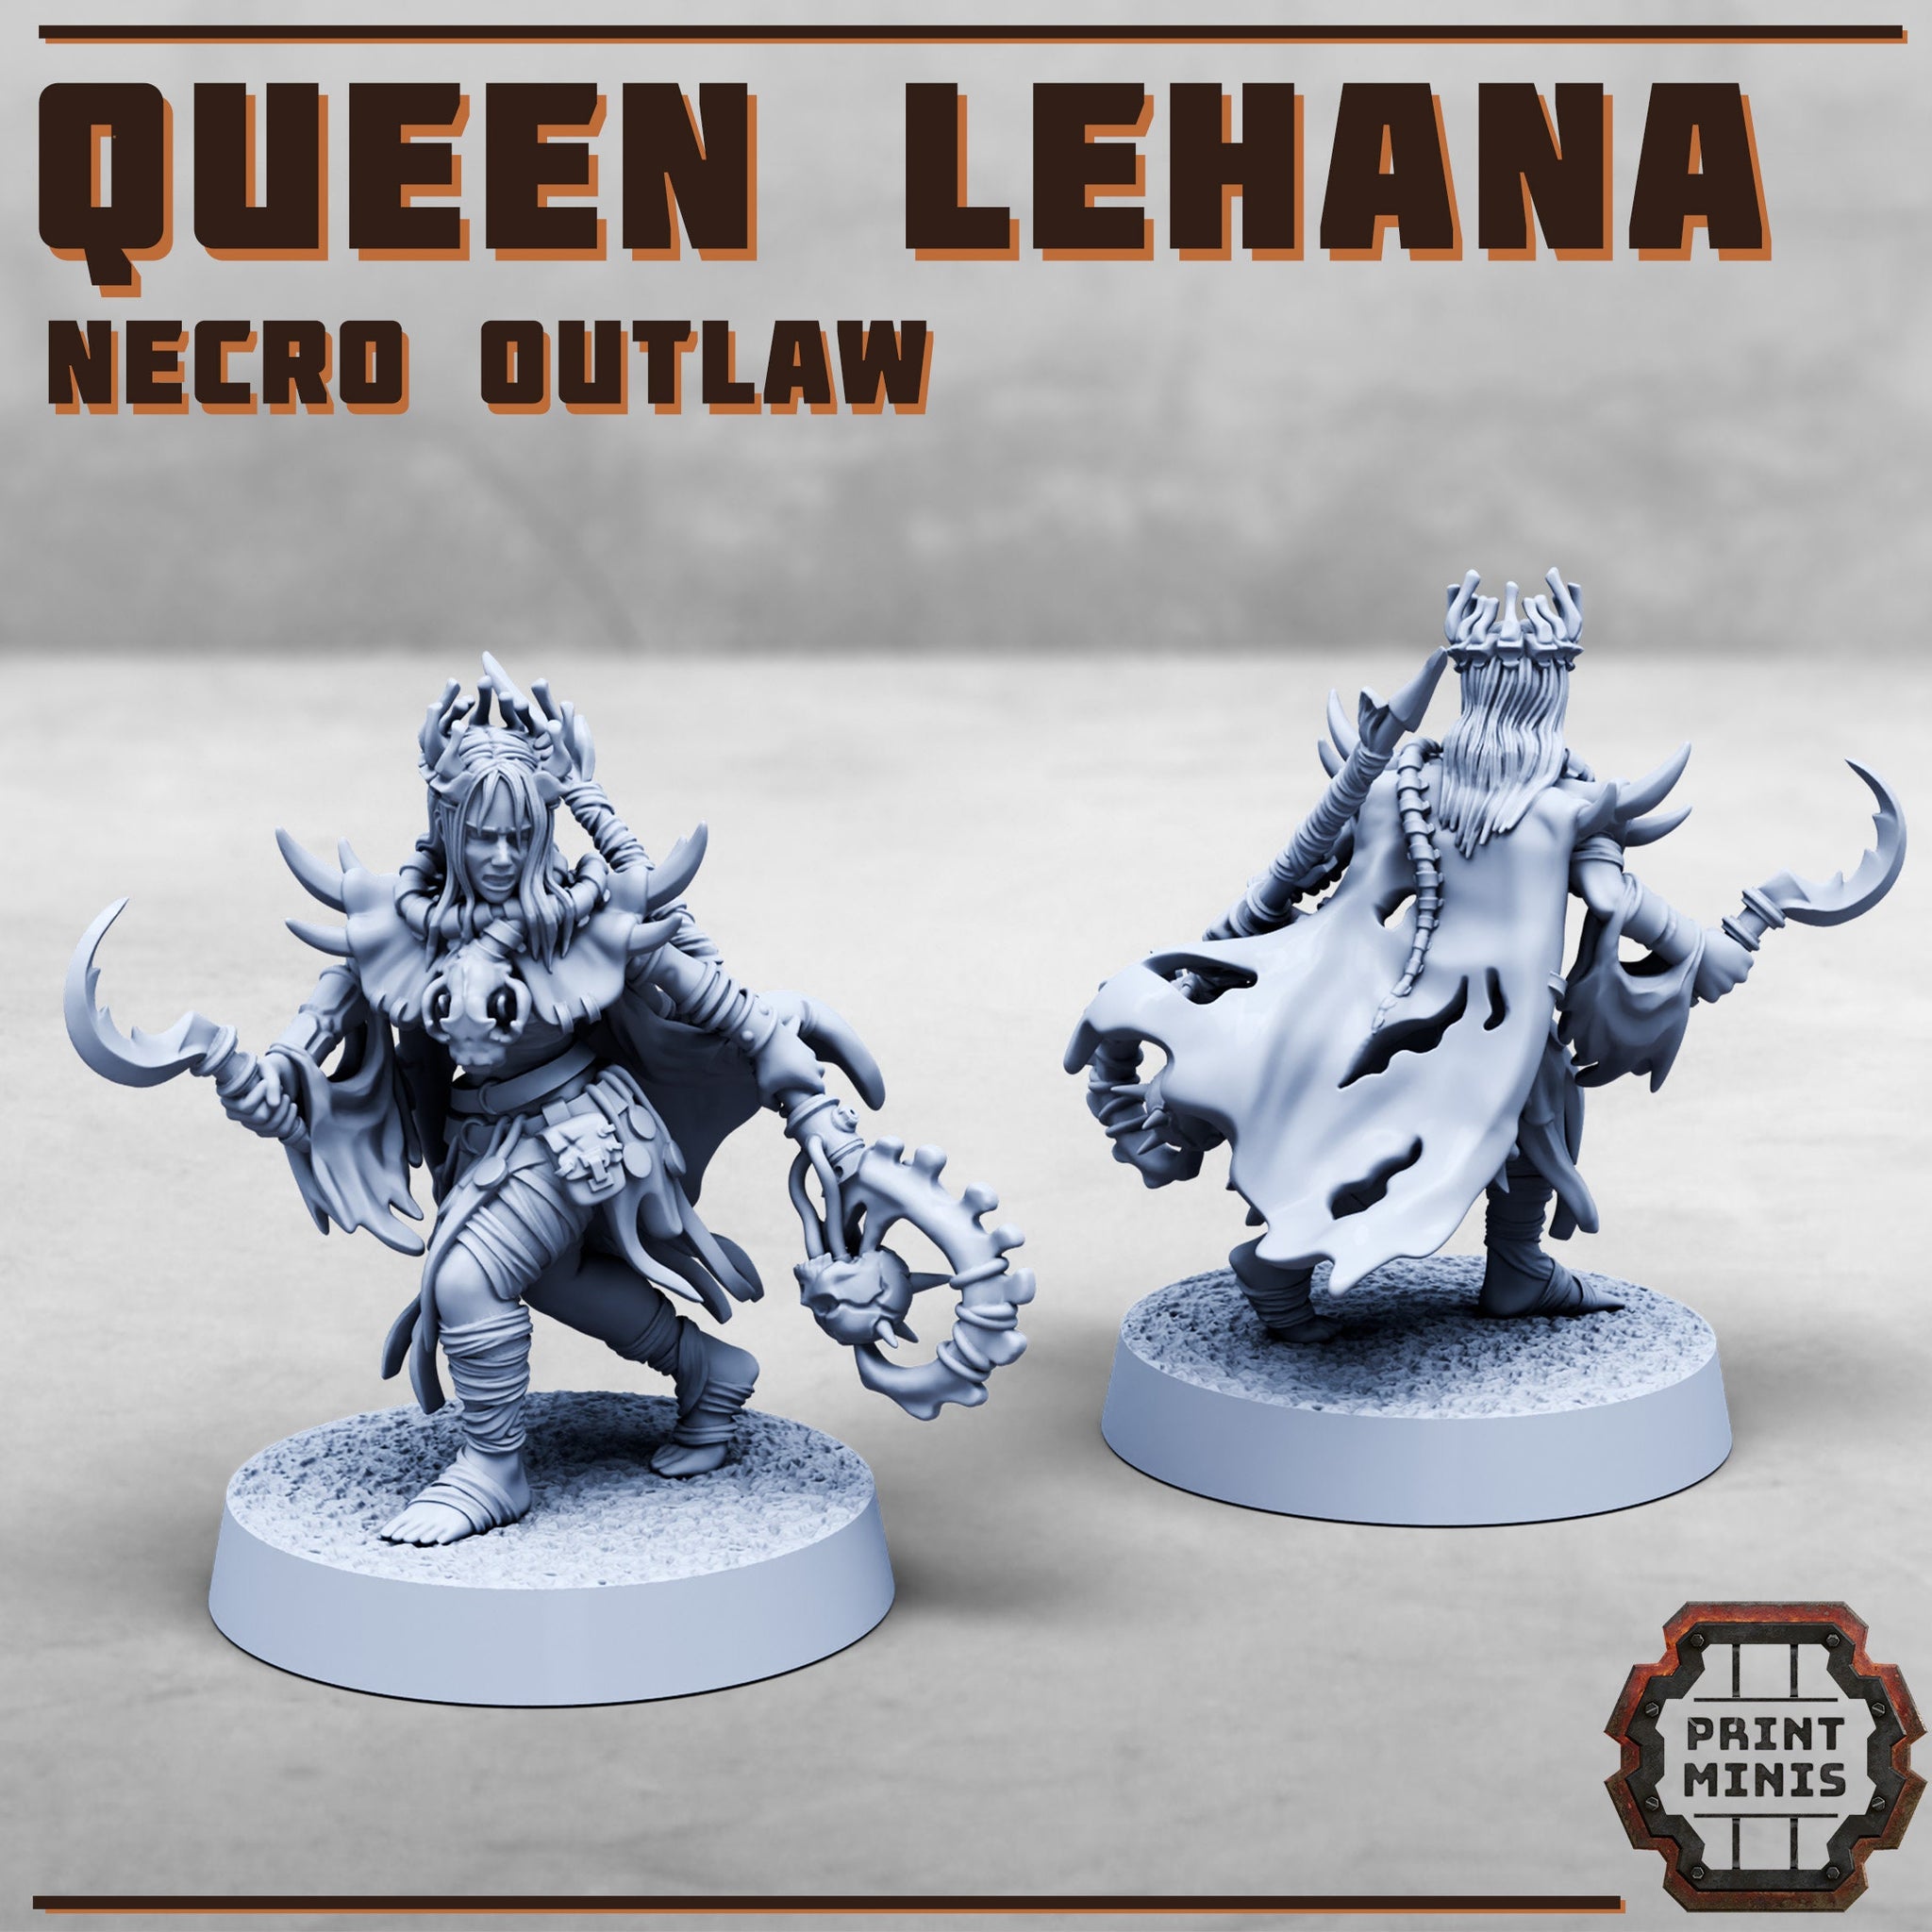 Queen Lehana - Necro Outlaw